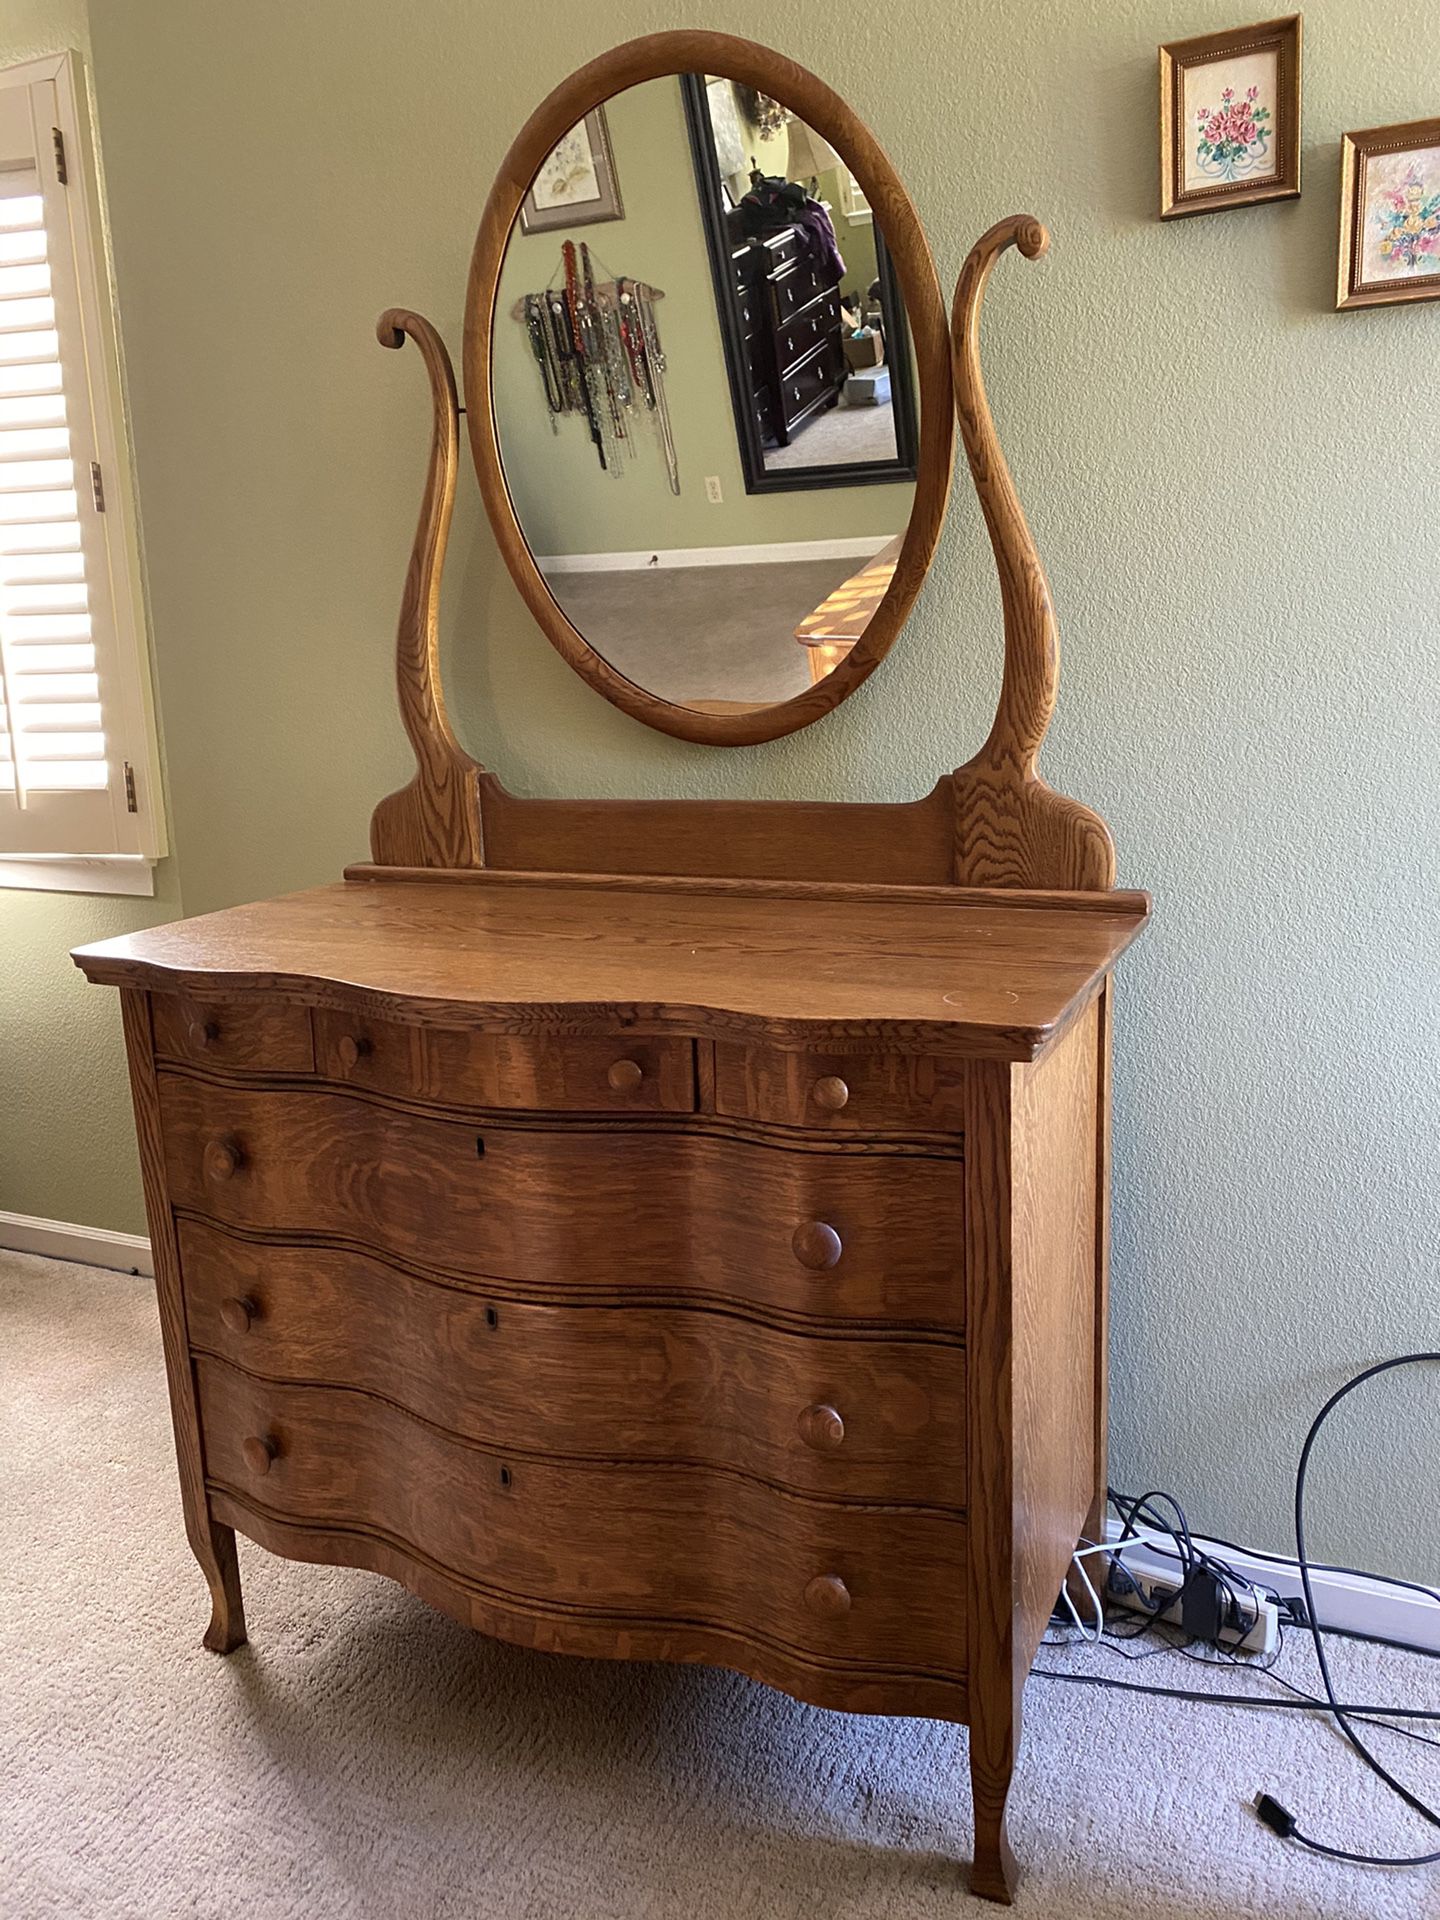 Oak serpentine front dresser with mirror.